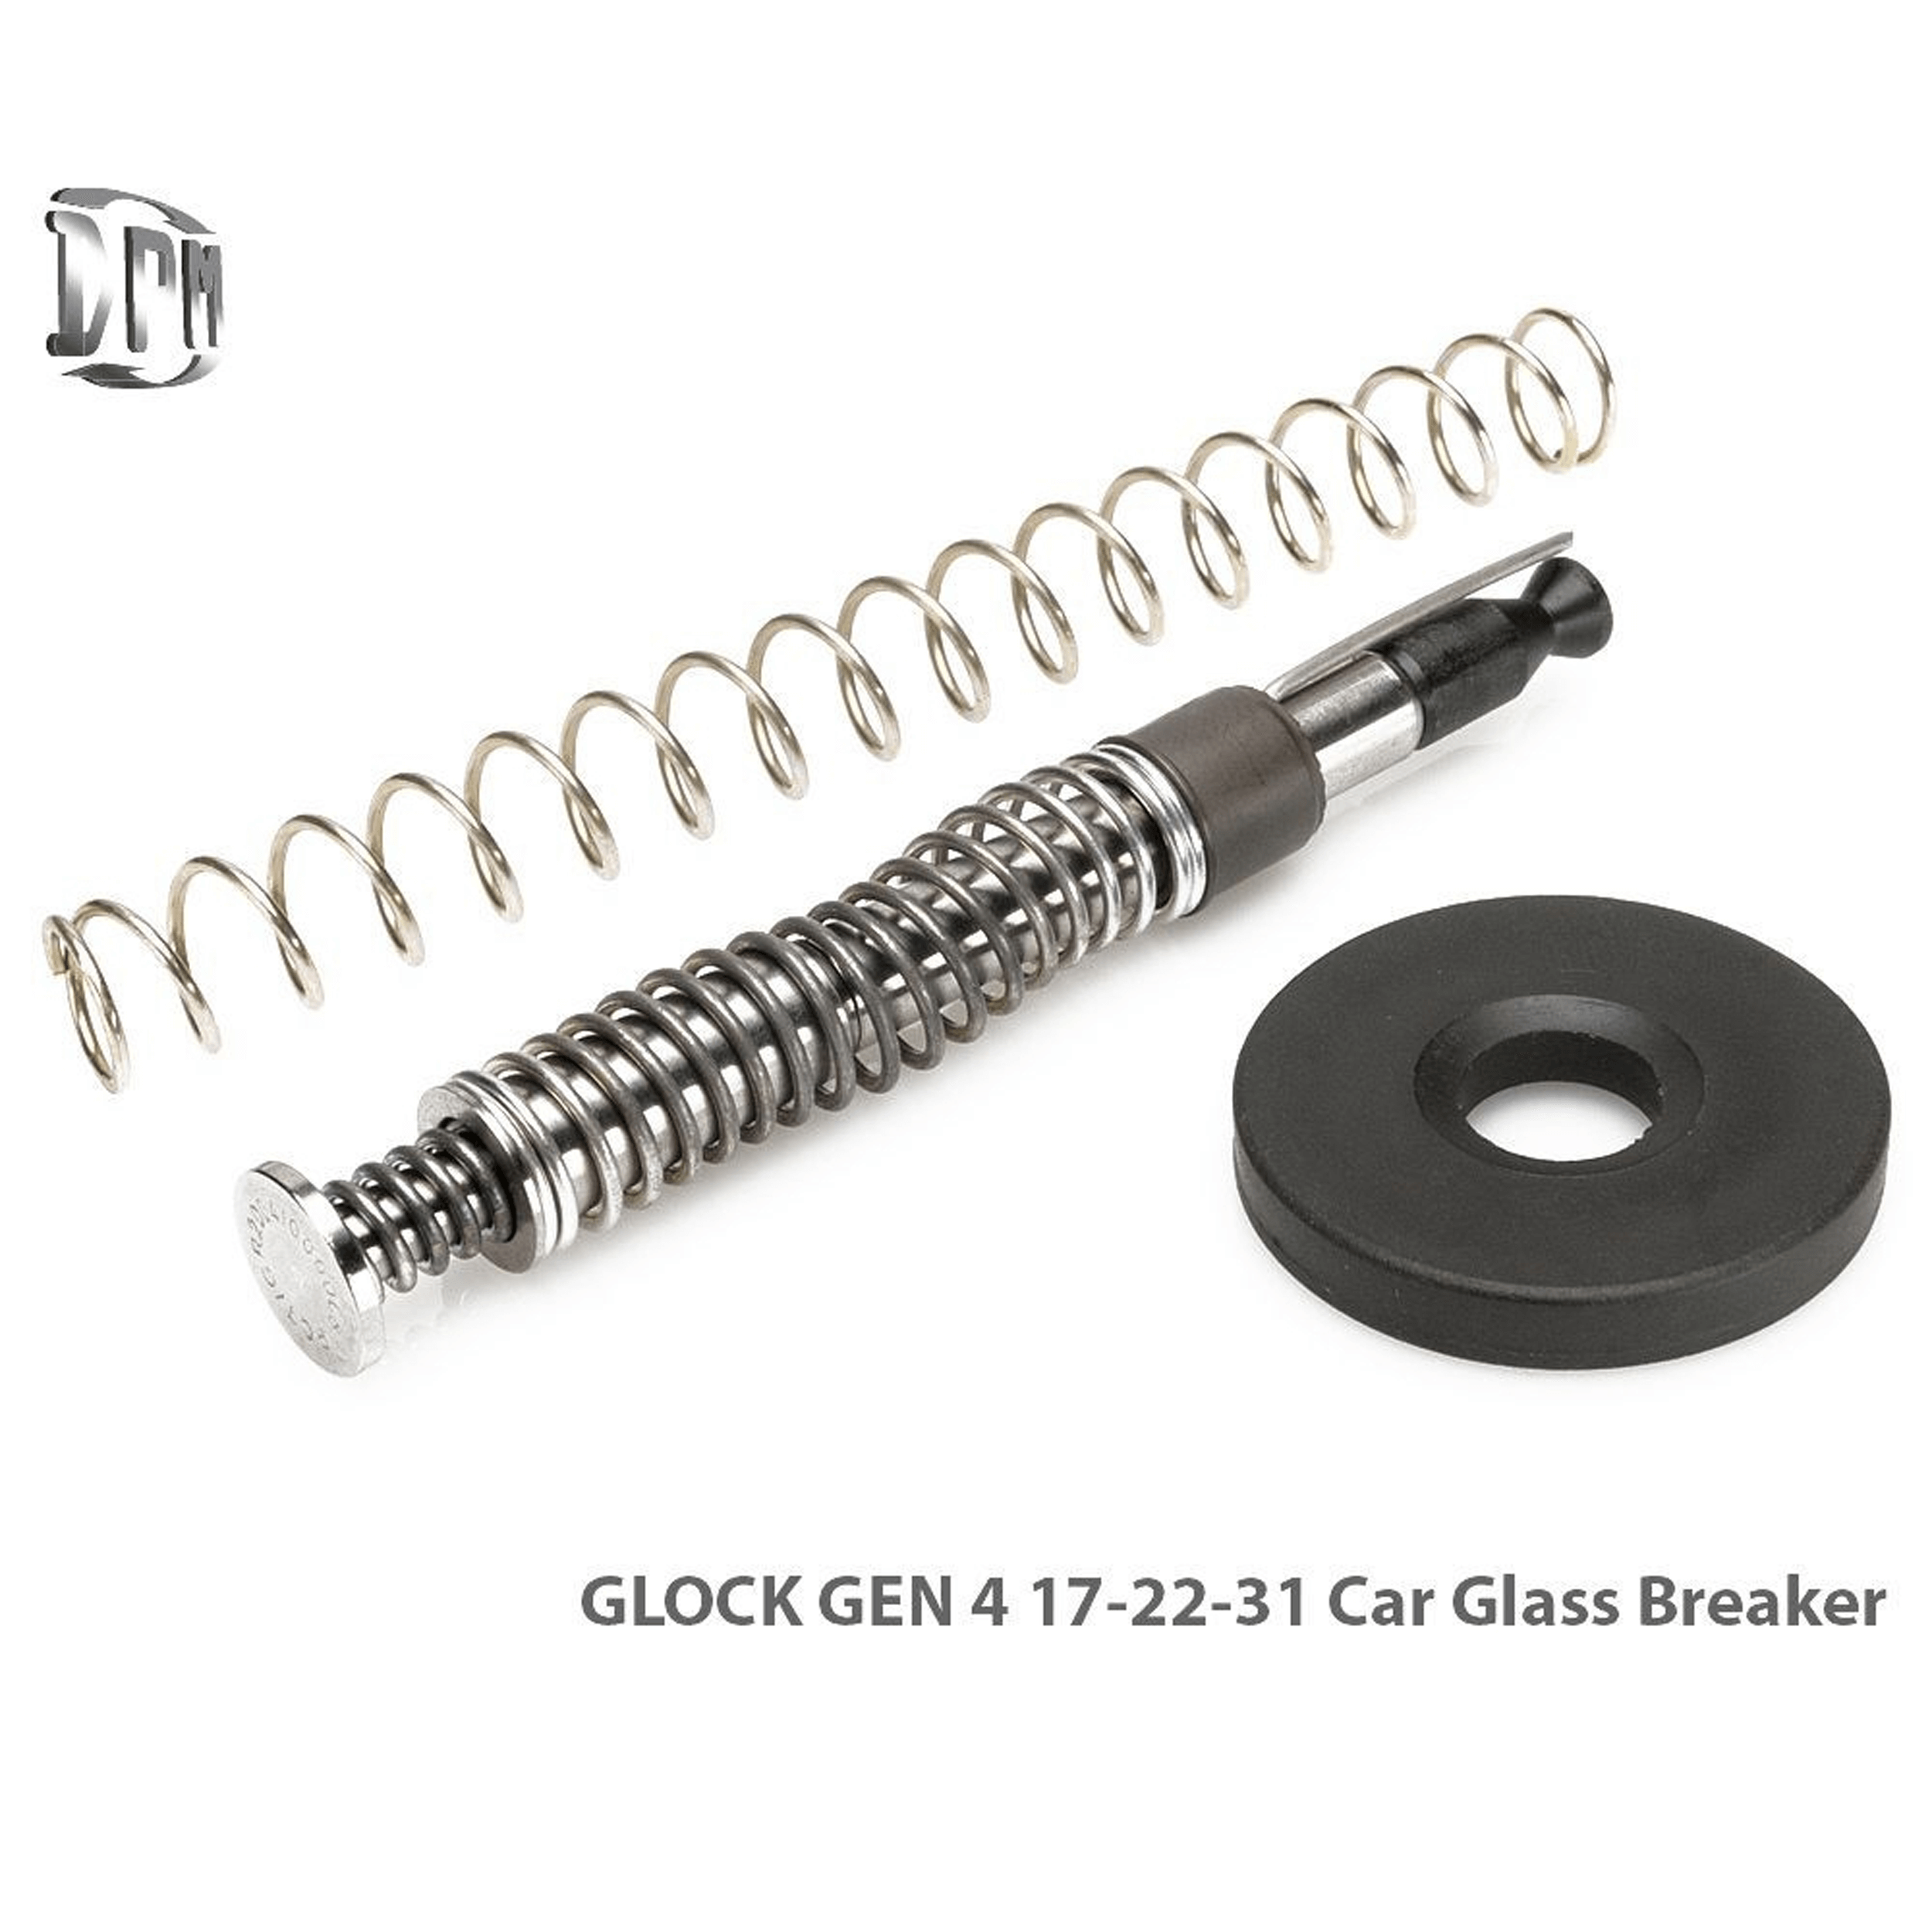 Glock 17, 22, 31 GEN 4 Car Glass Breaker